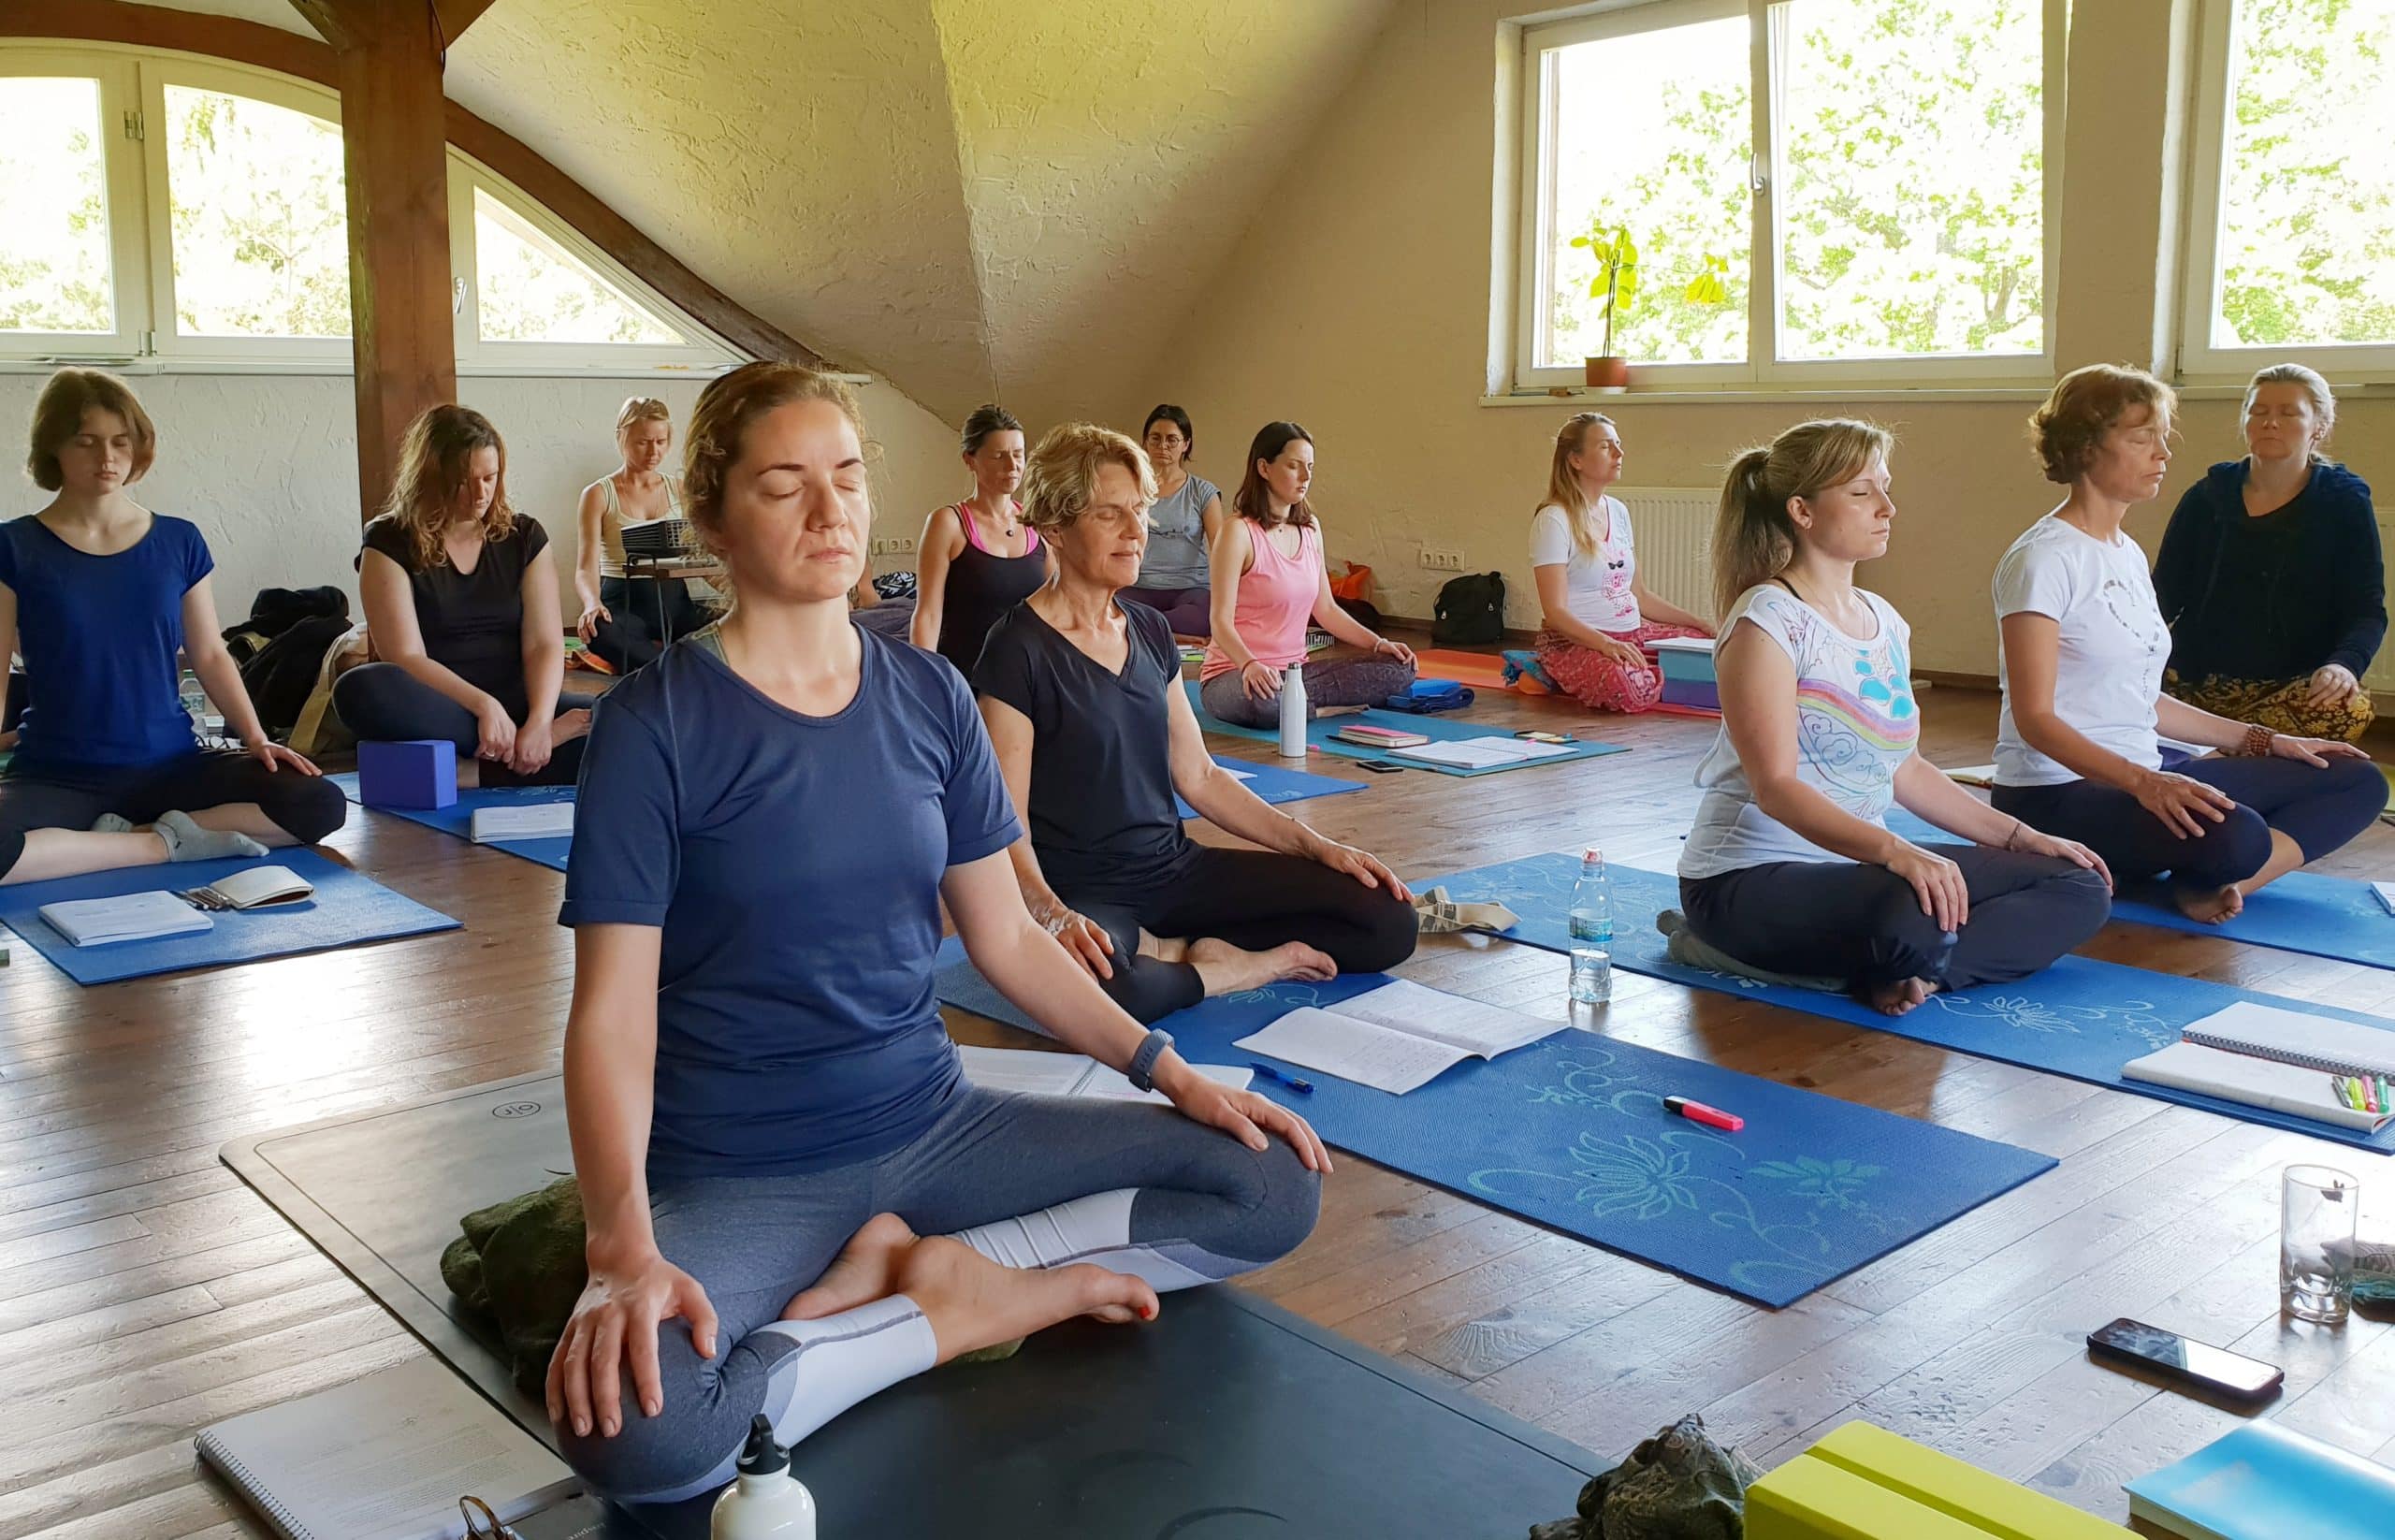 500 hour yoga teacher training